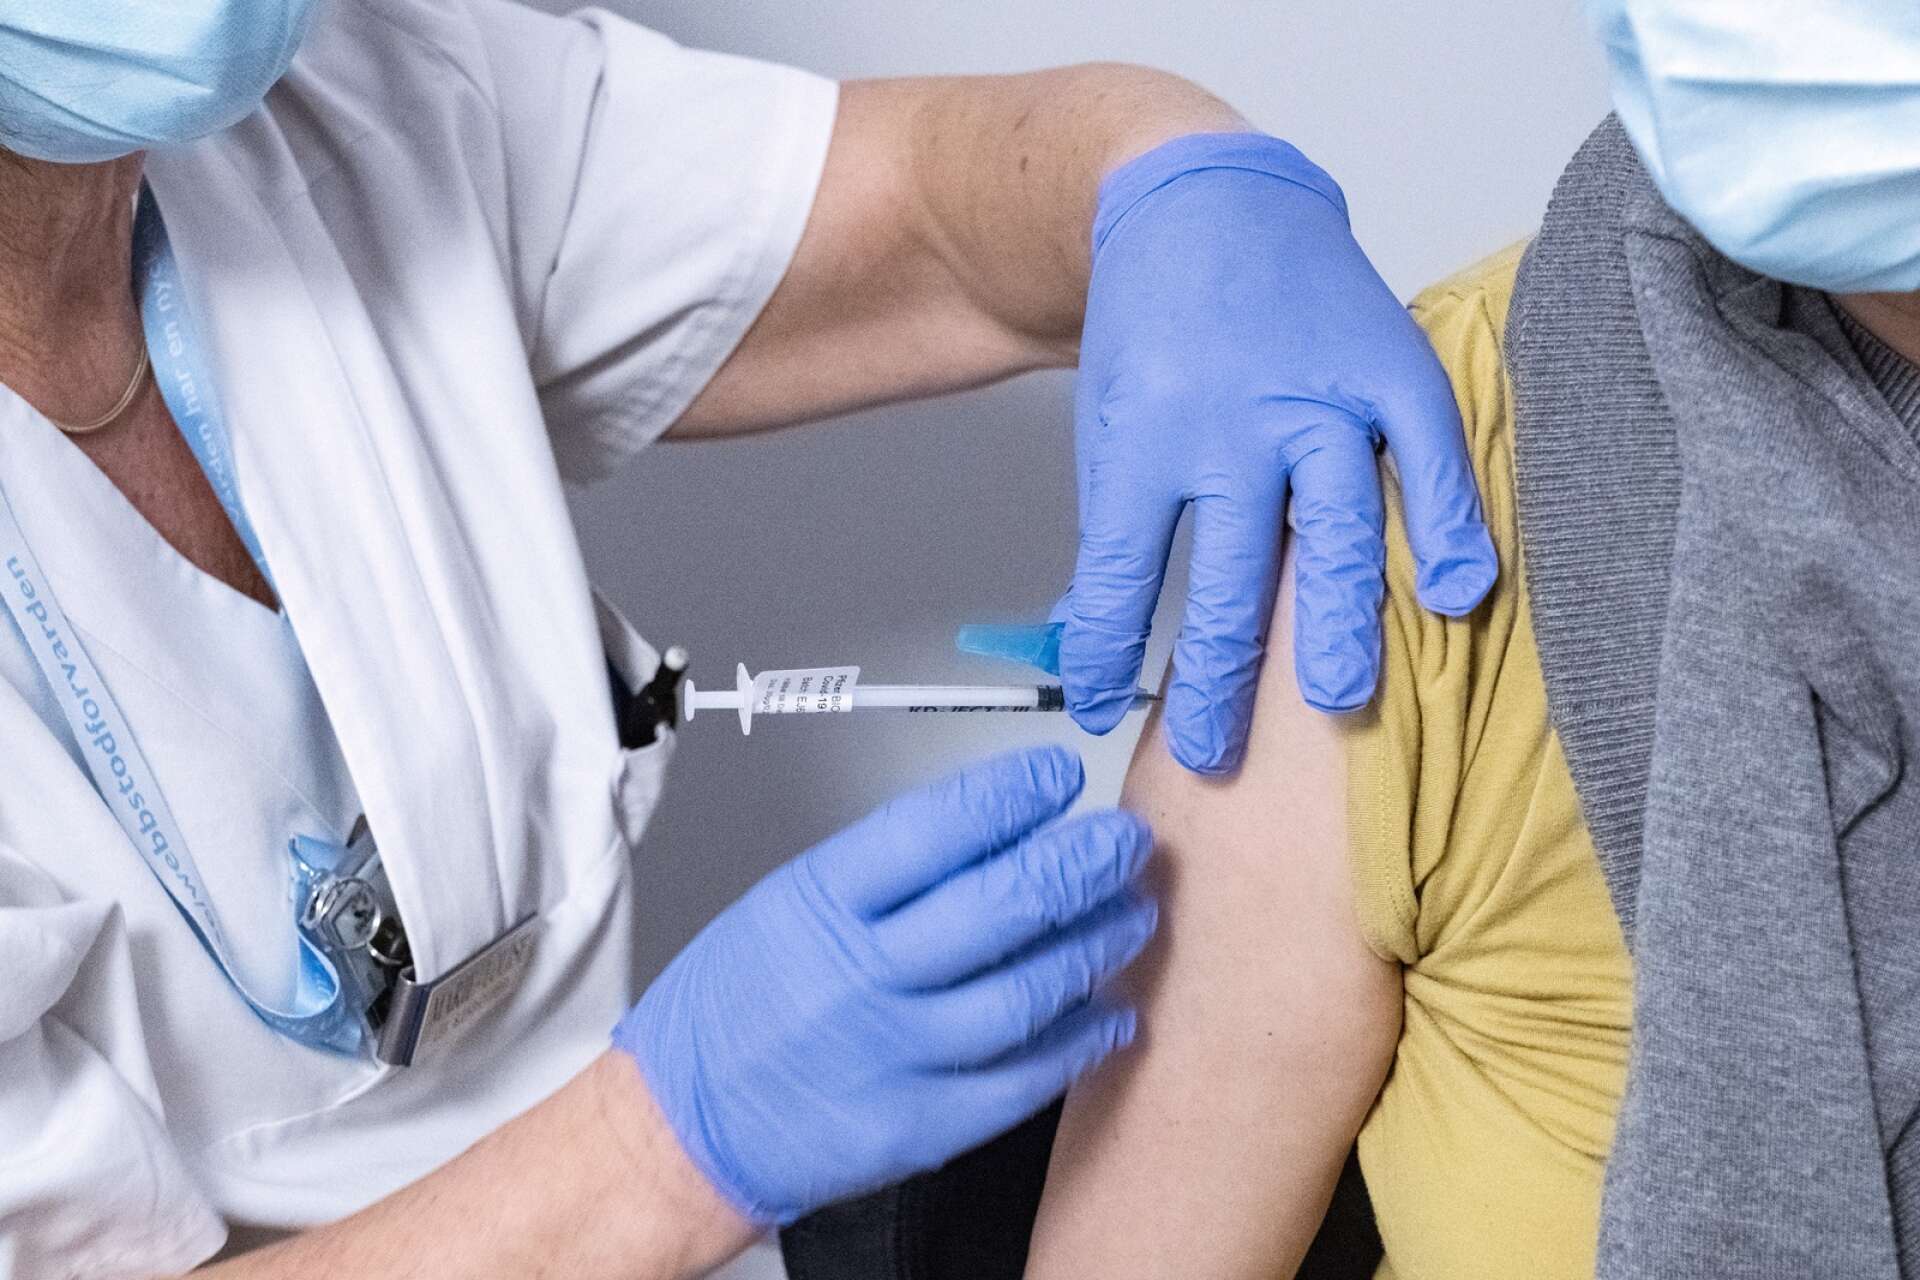 I fas 4 vaccineras alla mellan 18 och 59 år. 